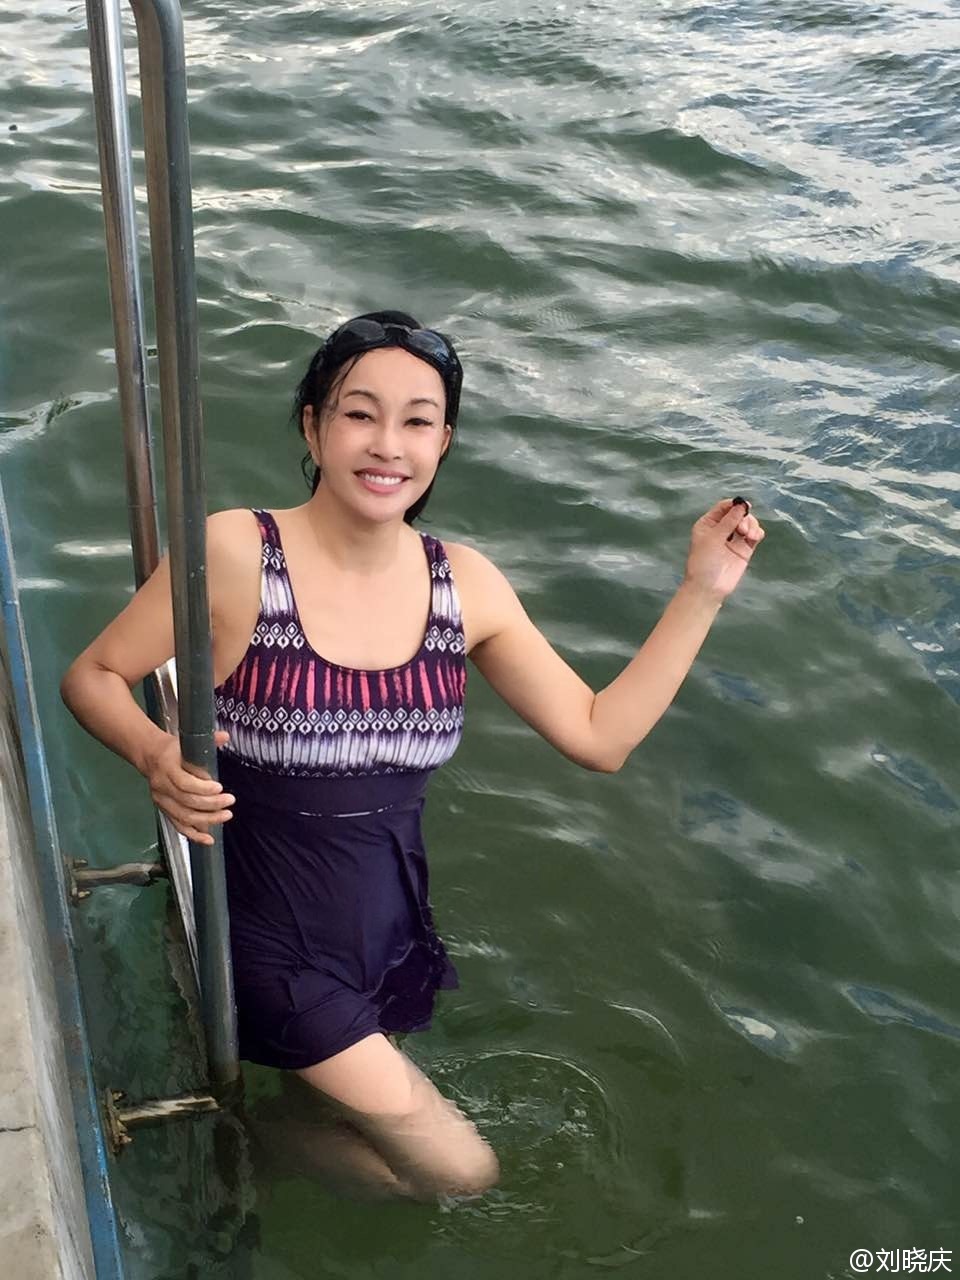 刘晓庆 照片中,刘晓庆湿身浸在水中,头发垂在脸颊两侧,尽管泳衣为保守